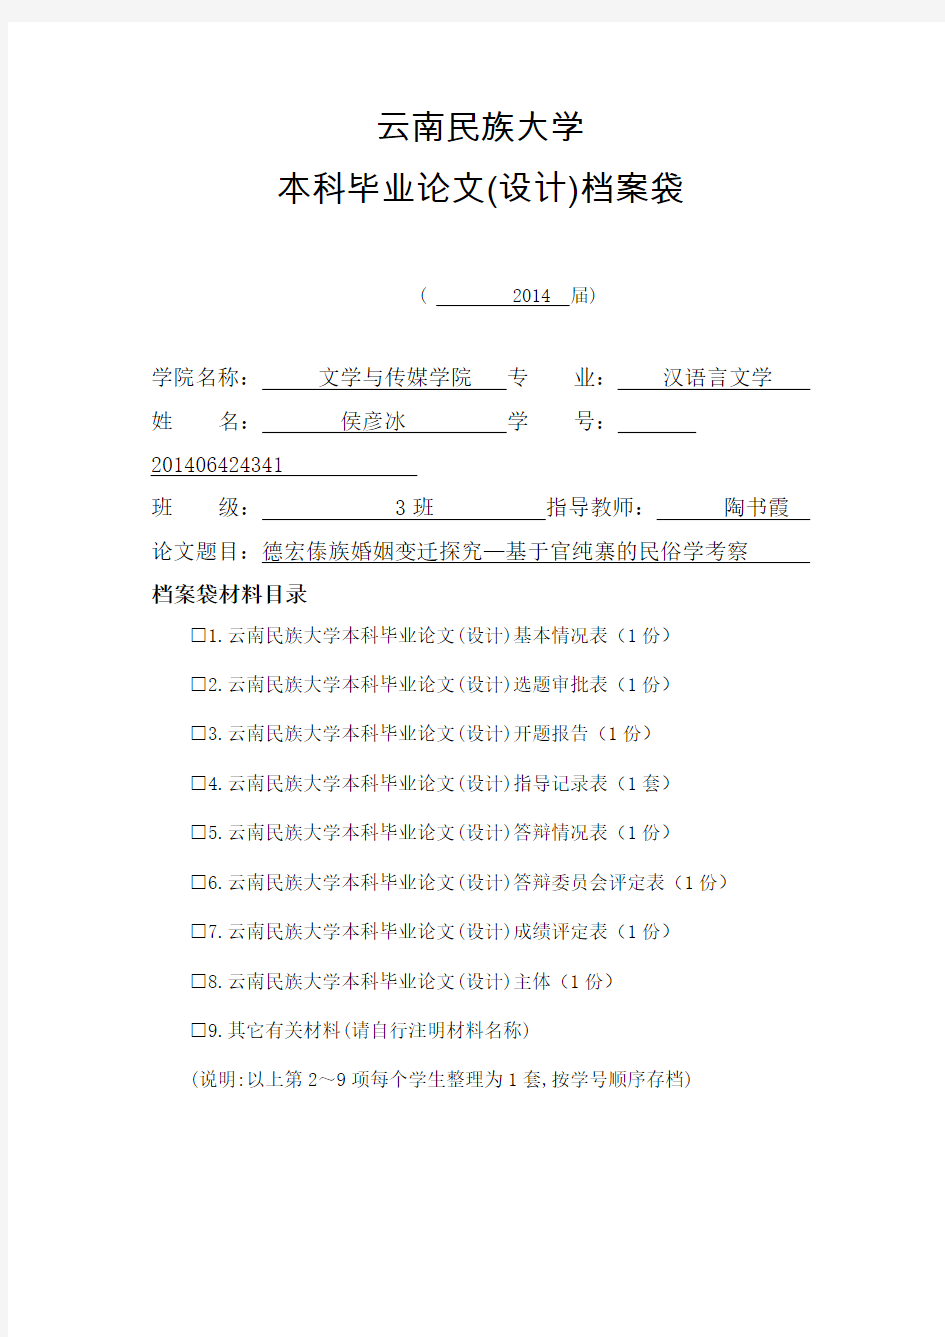 1.云南民族大学毕业论文(设计)档案袋